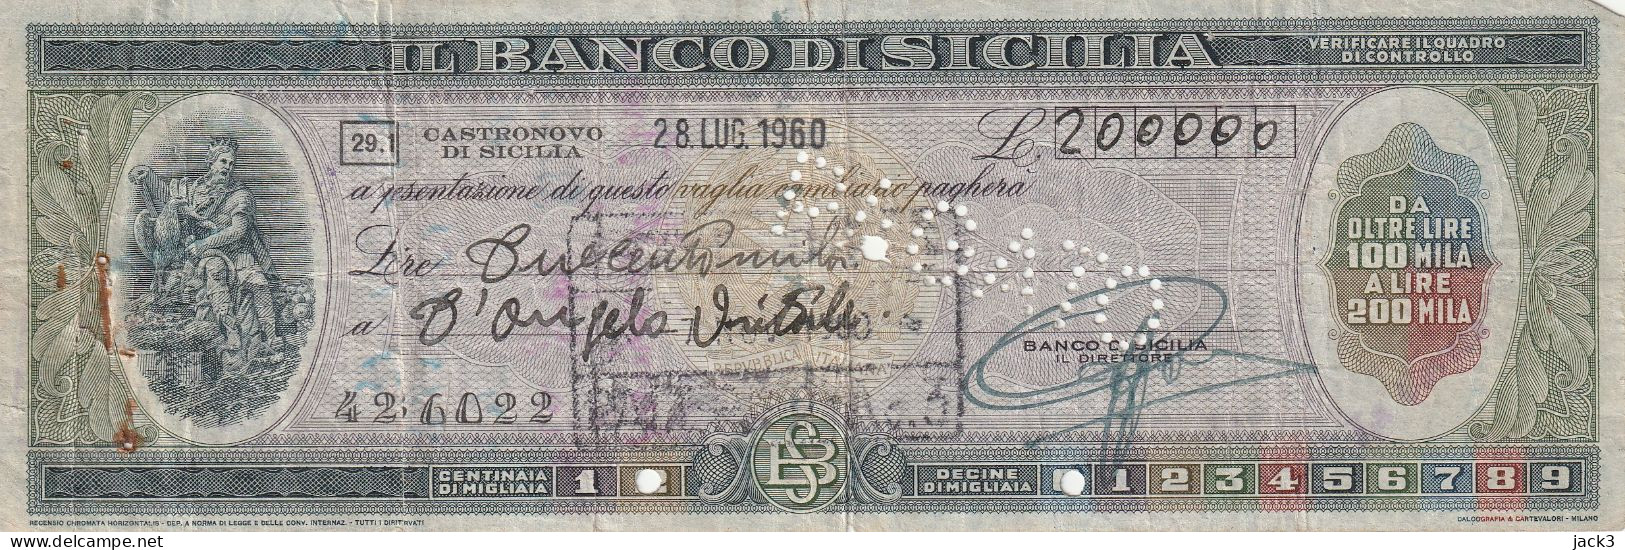 ASSEGNO - BANCO DI SICILIA - CASTRONOVO DI SICILIA 1960 - Cheques & Traveler's Cheques